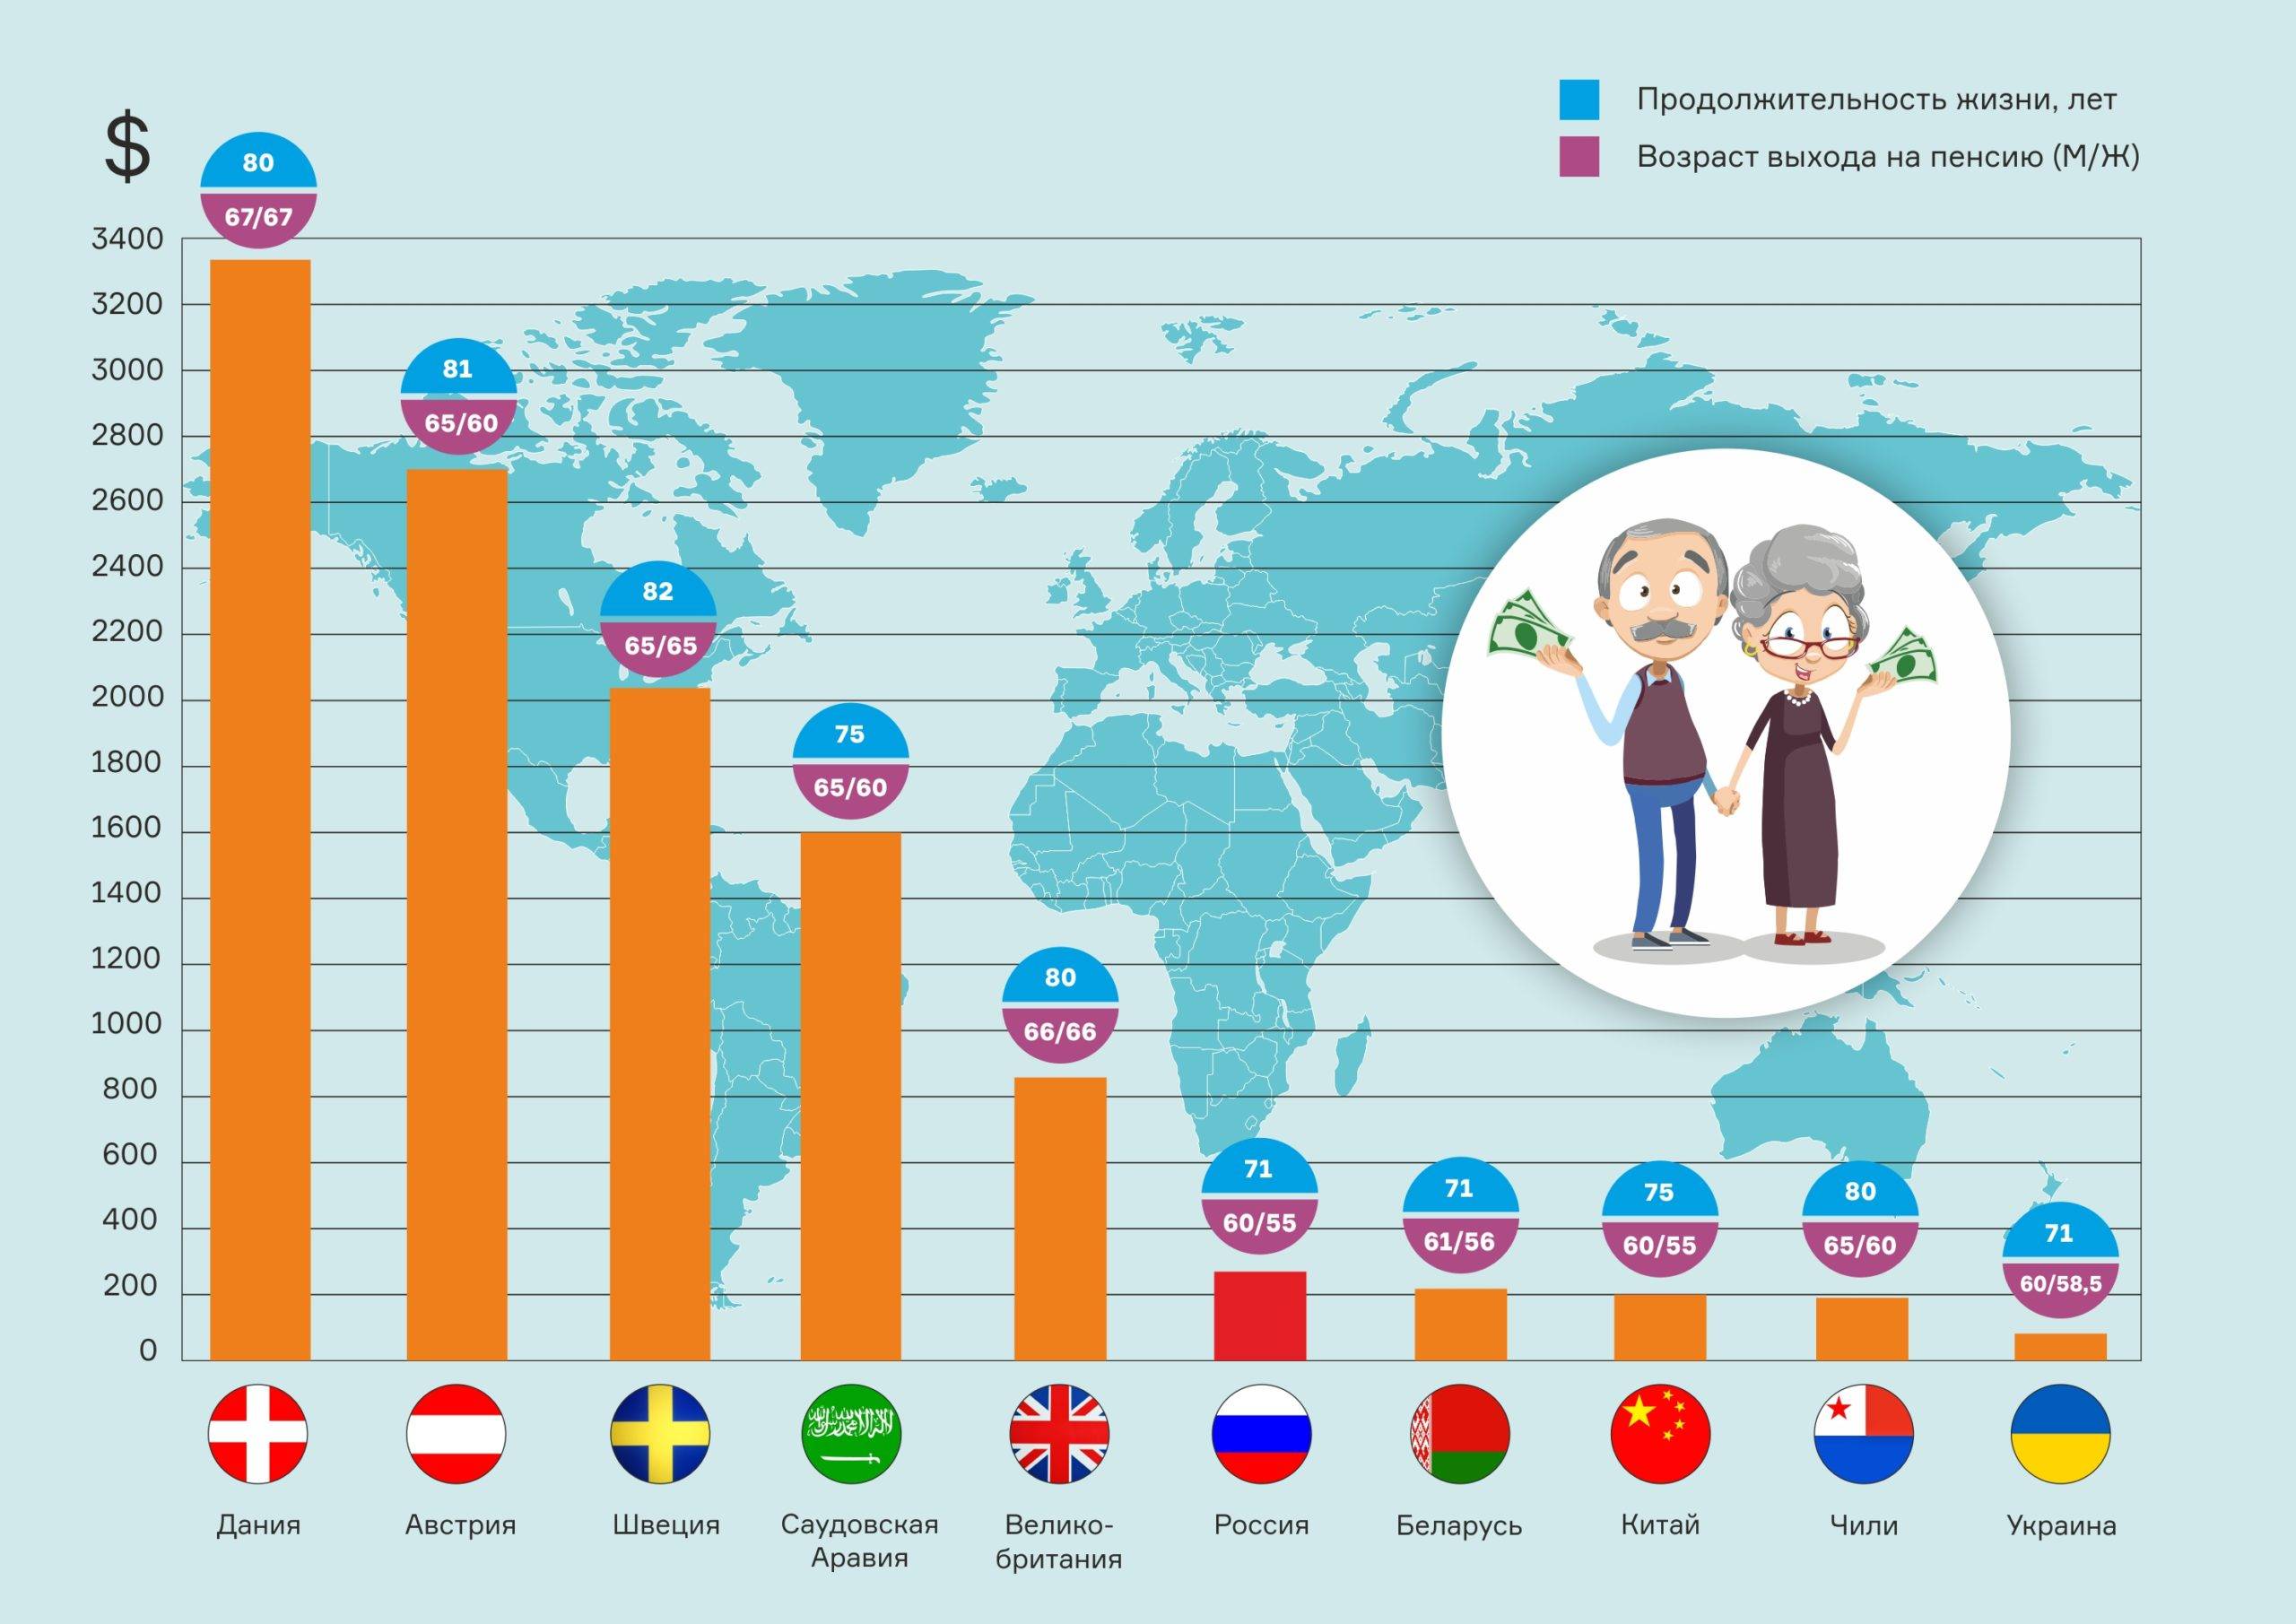 Выход на пенсию в странах мира: минимальный и максимальный пенсионный возраст, пенсионные системы